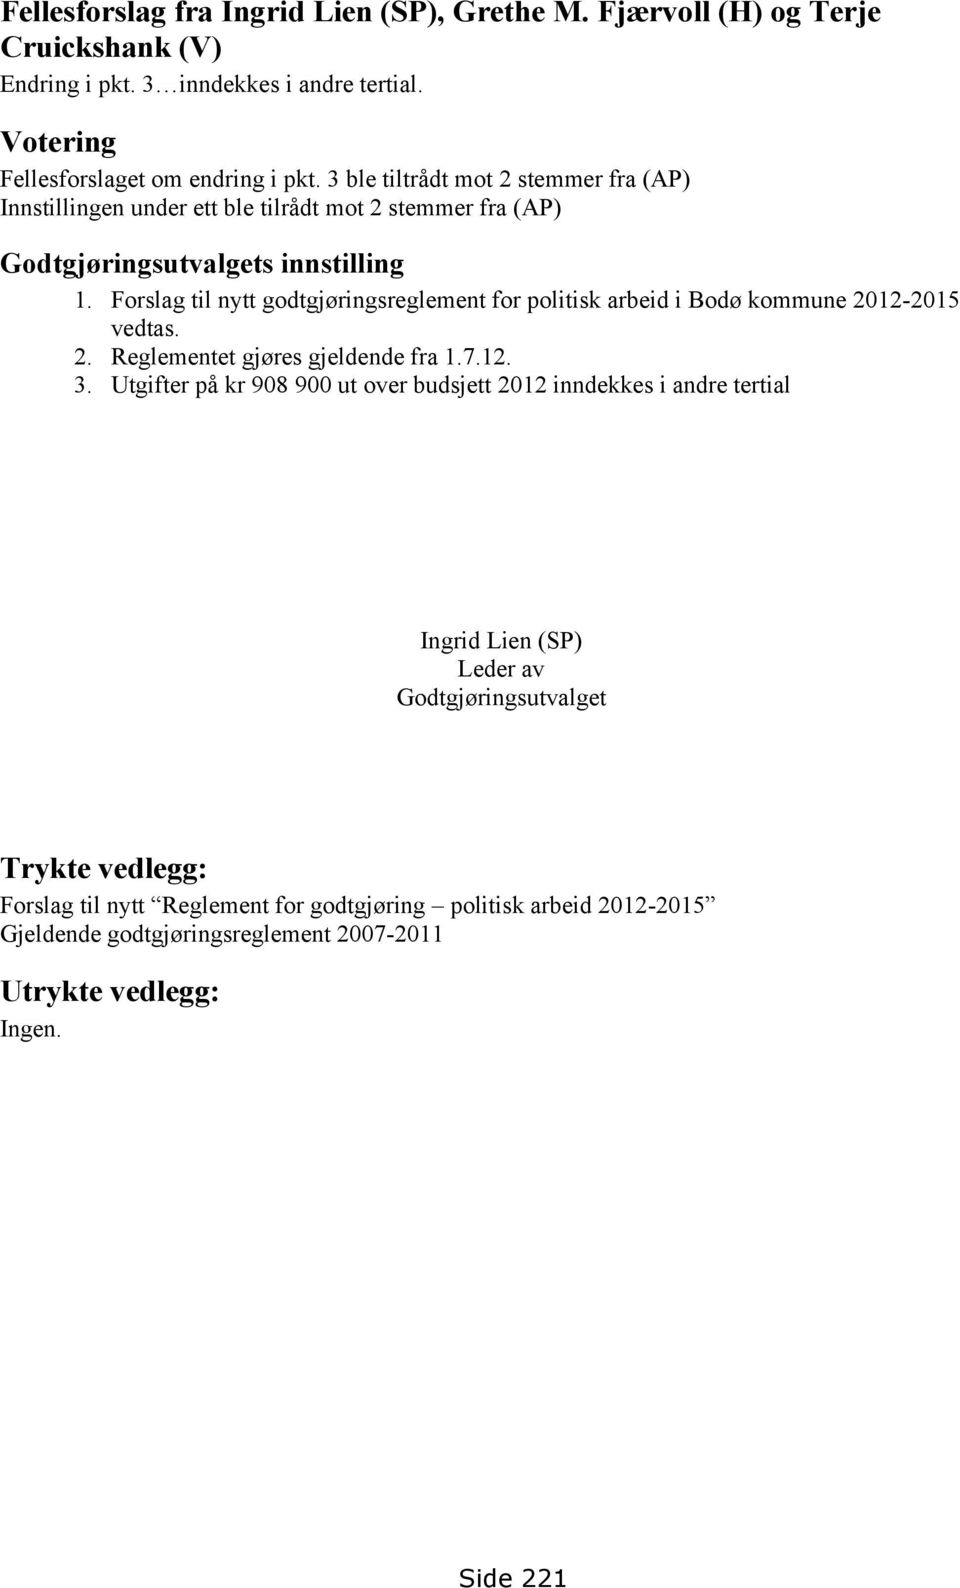 Forslag til nytt godtgjøringsreglement for politisk arbeid i Bodø kommune 2012-2015 vedtas. 2. Reglementet gjøres gjeldende fra 1.7.12. 3.